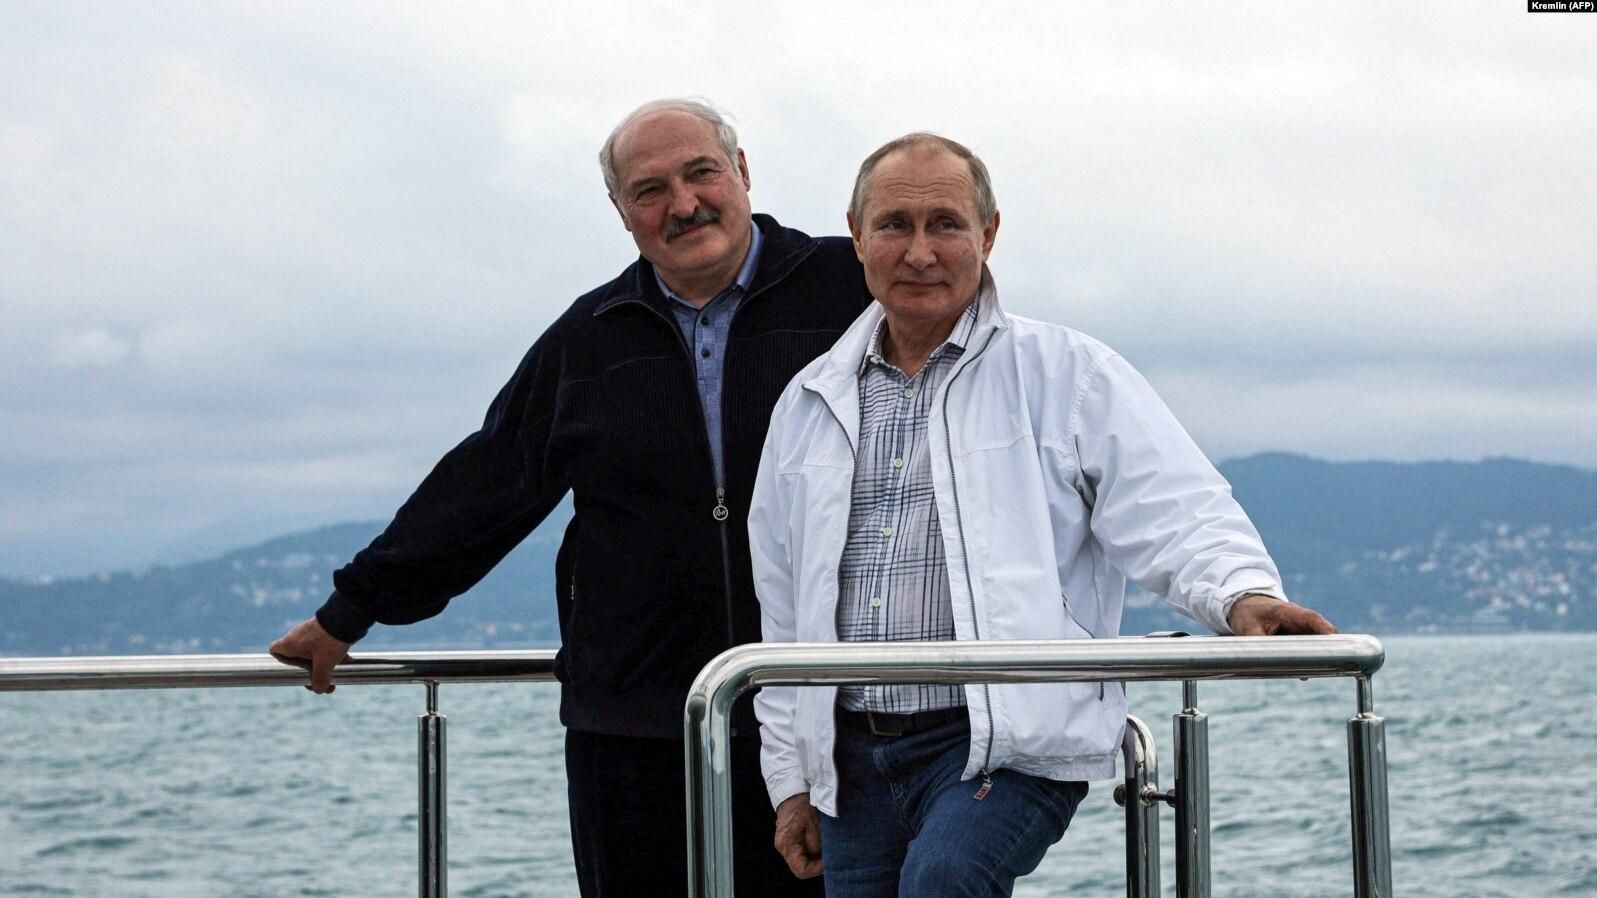 Чи буде єдиний президент у Союзної держави: Лукашенко пояснив, яка позиціях у них з Путіним - Україна новини - 24 Канал